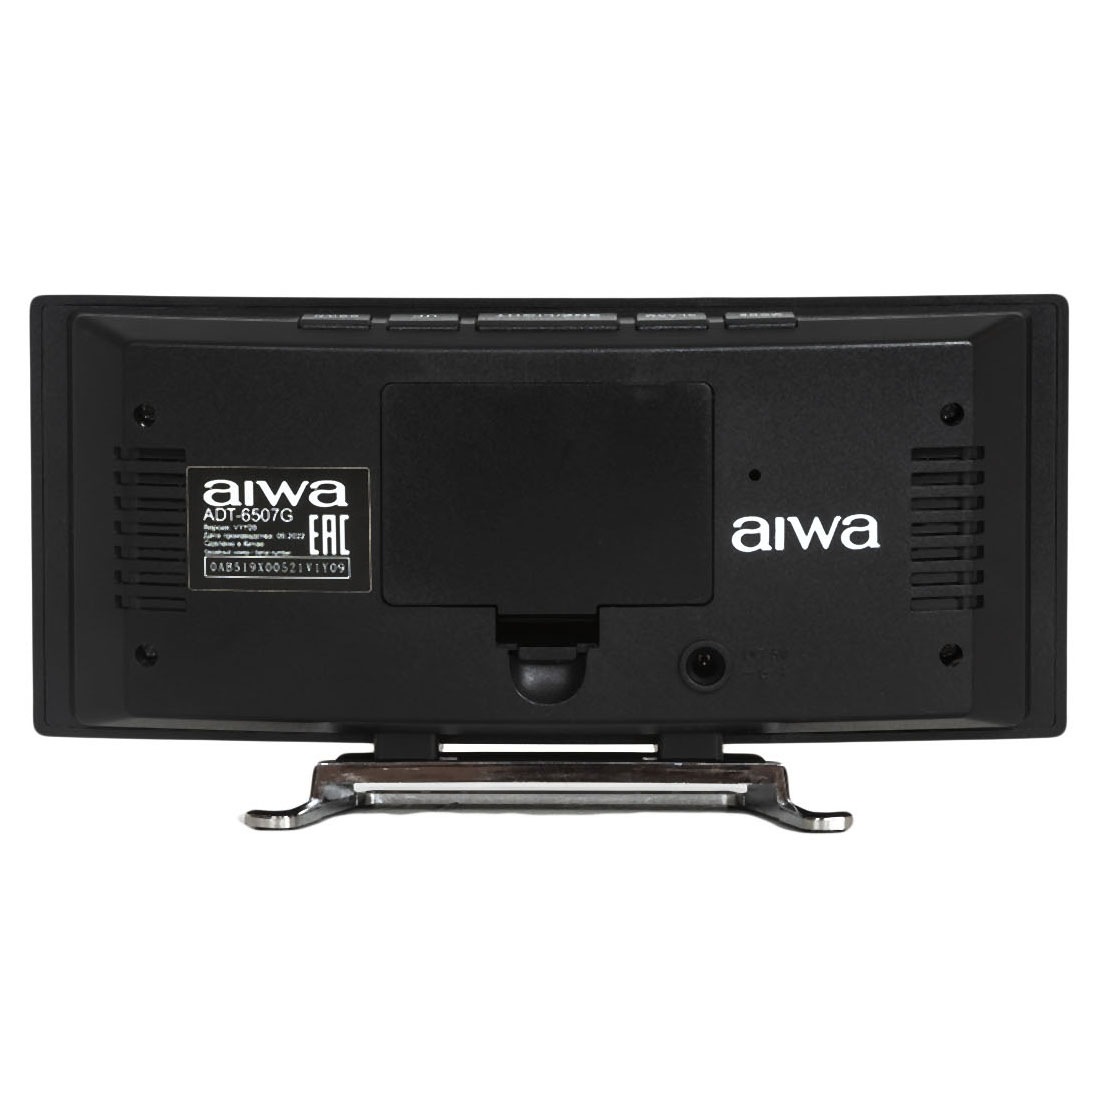 Часы электронные AIWA ADT-6507G